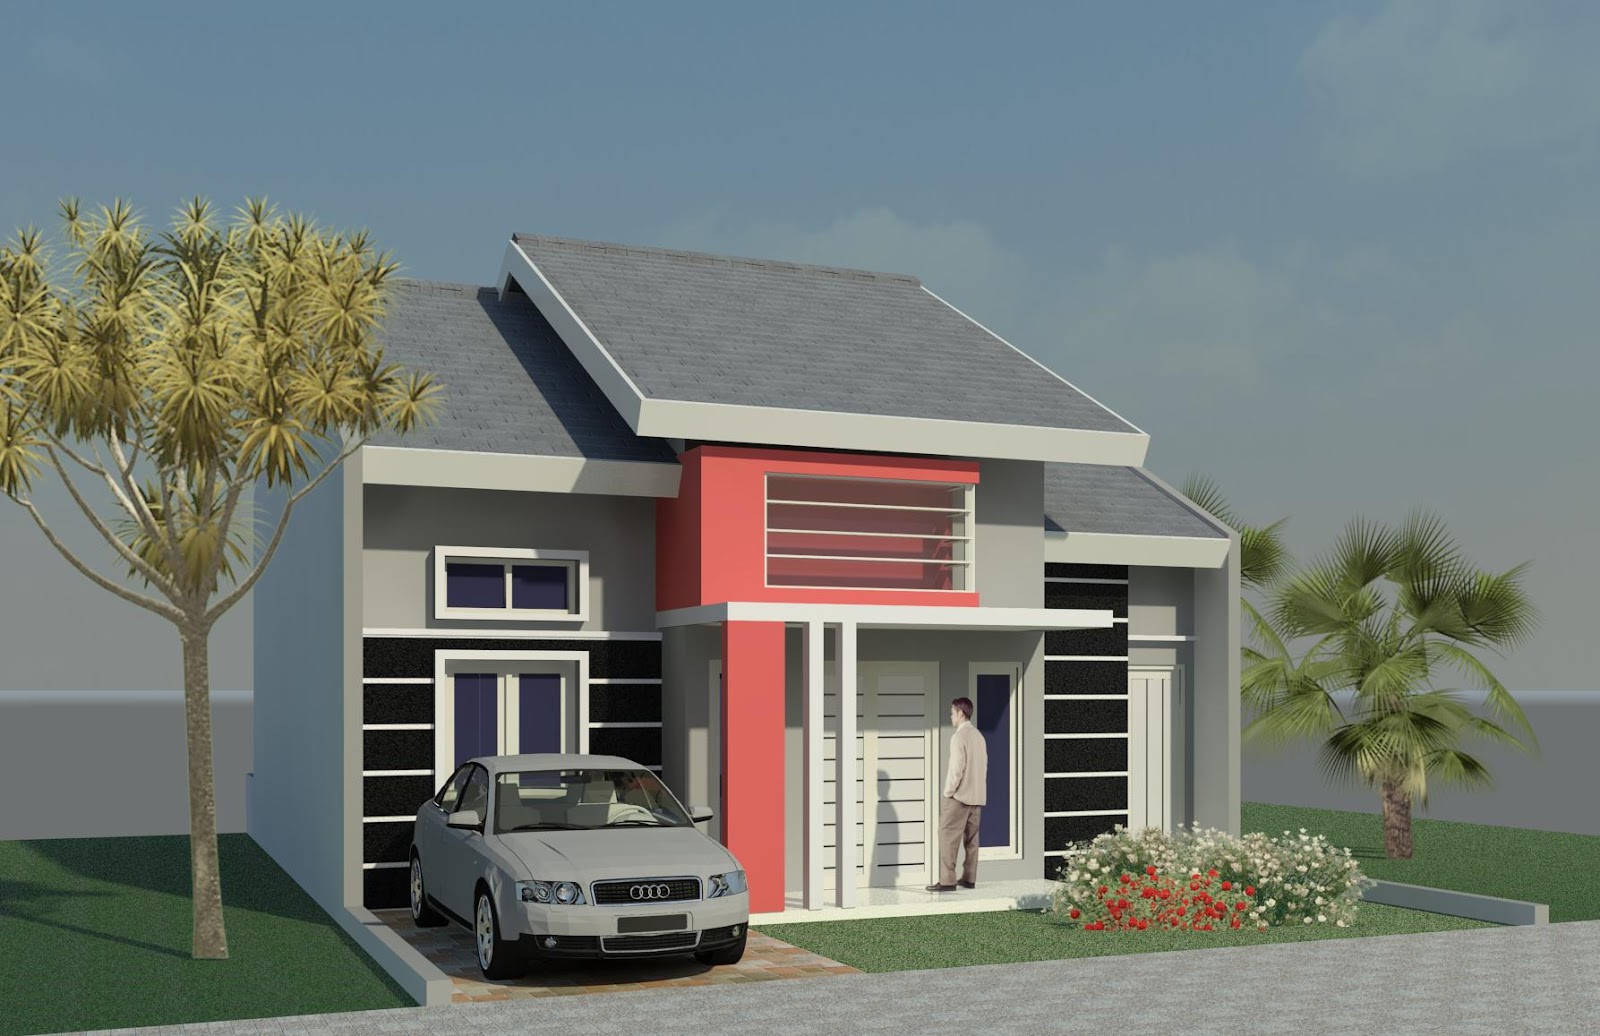 Rumah Minimalis Sederhana Model Terbaru dan Banyak Dicari - Desain Rumah